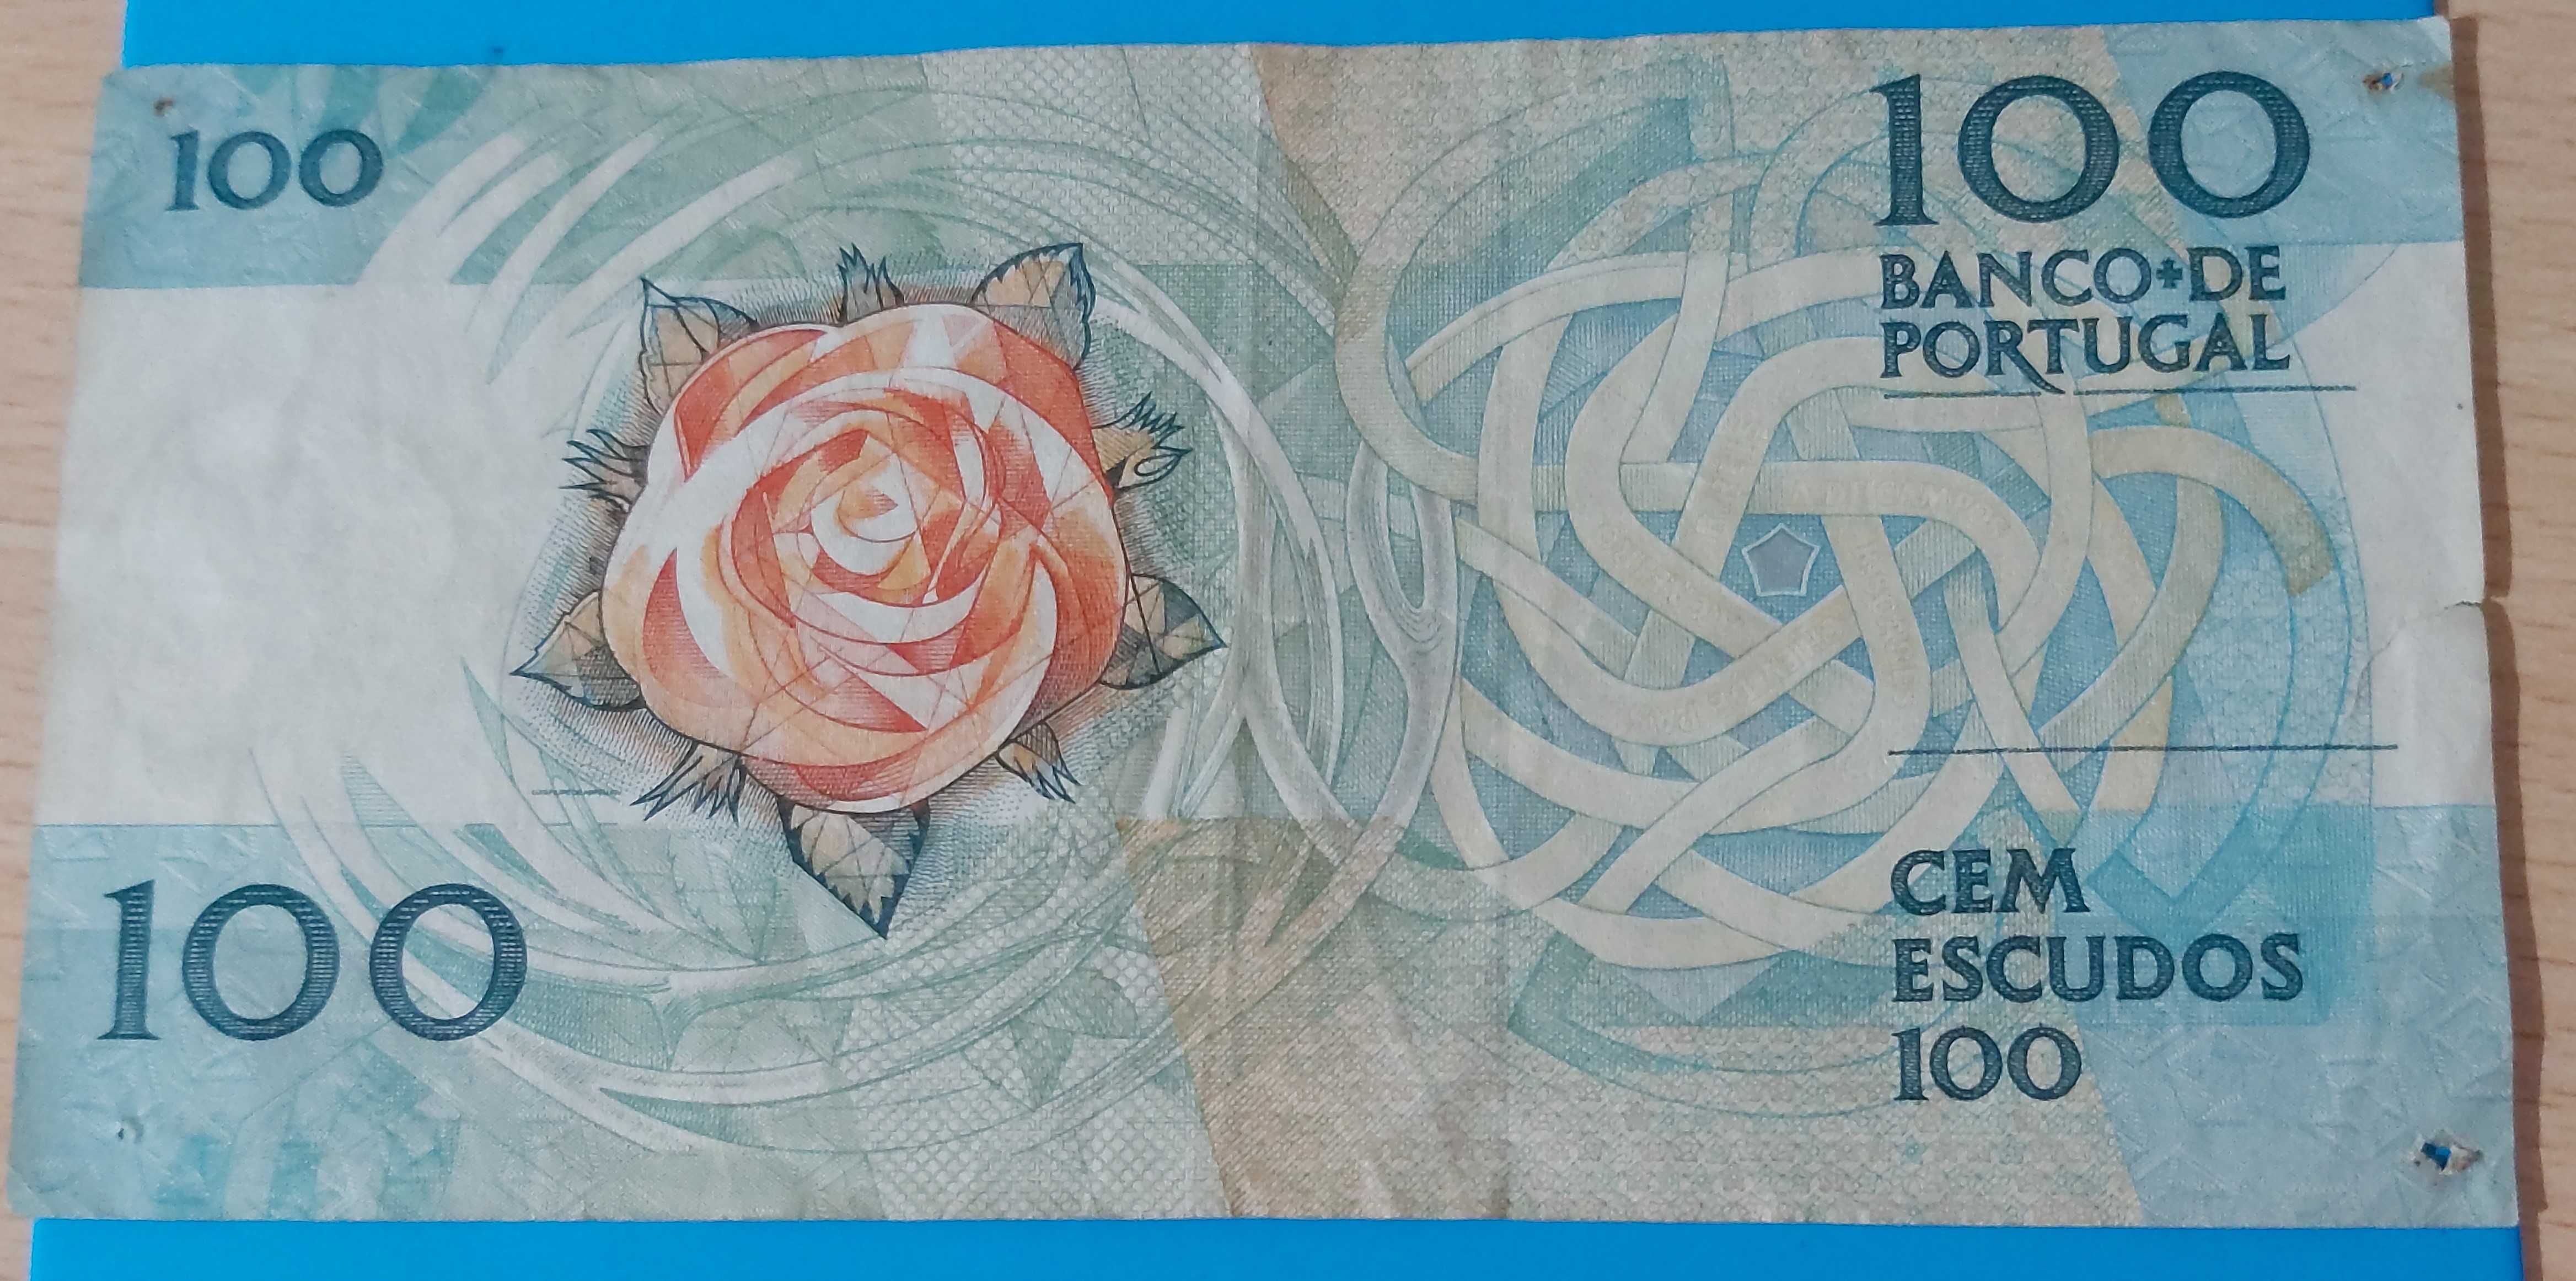 Nota de 100$00 de Portugal, CH 9, Fernando Pessoa 1988